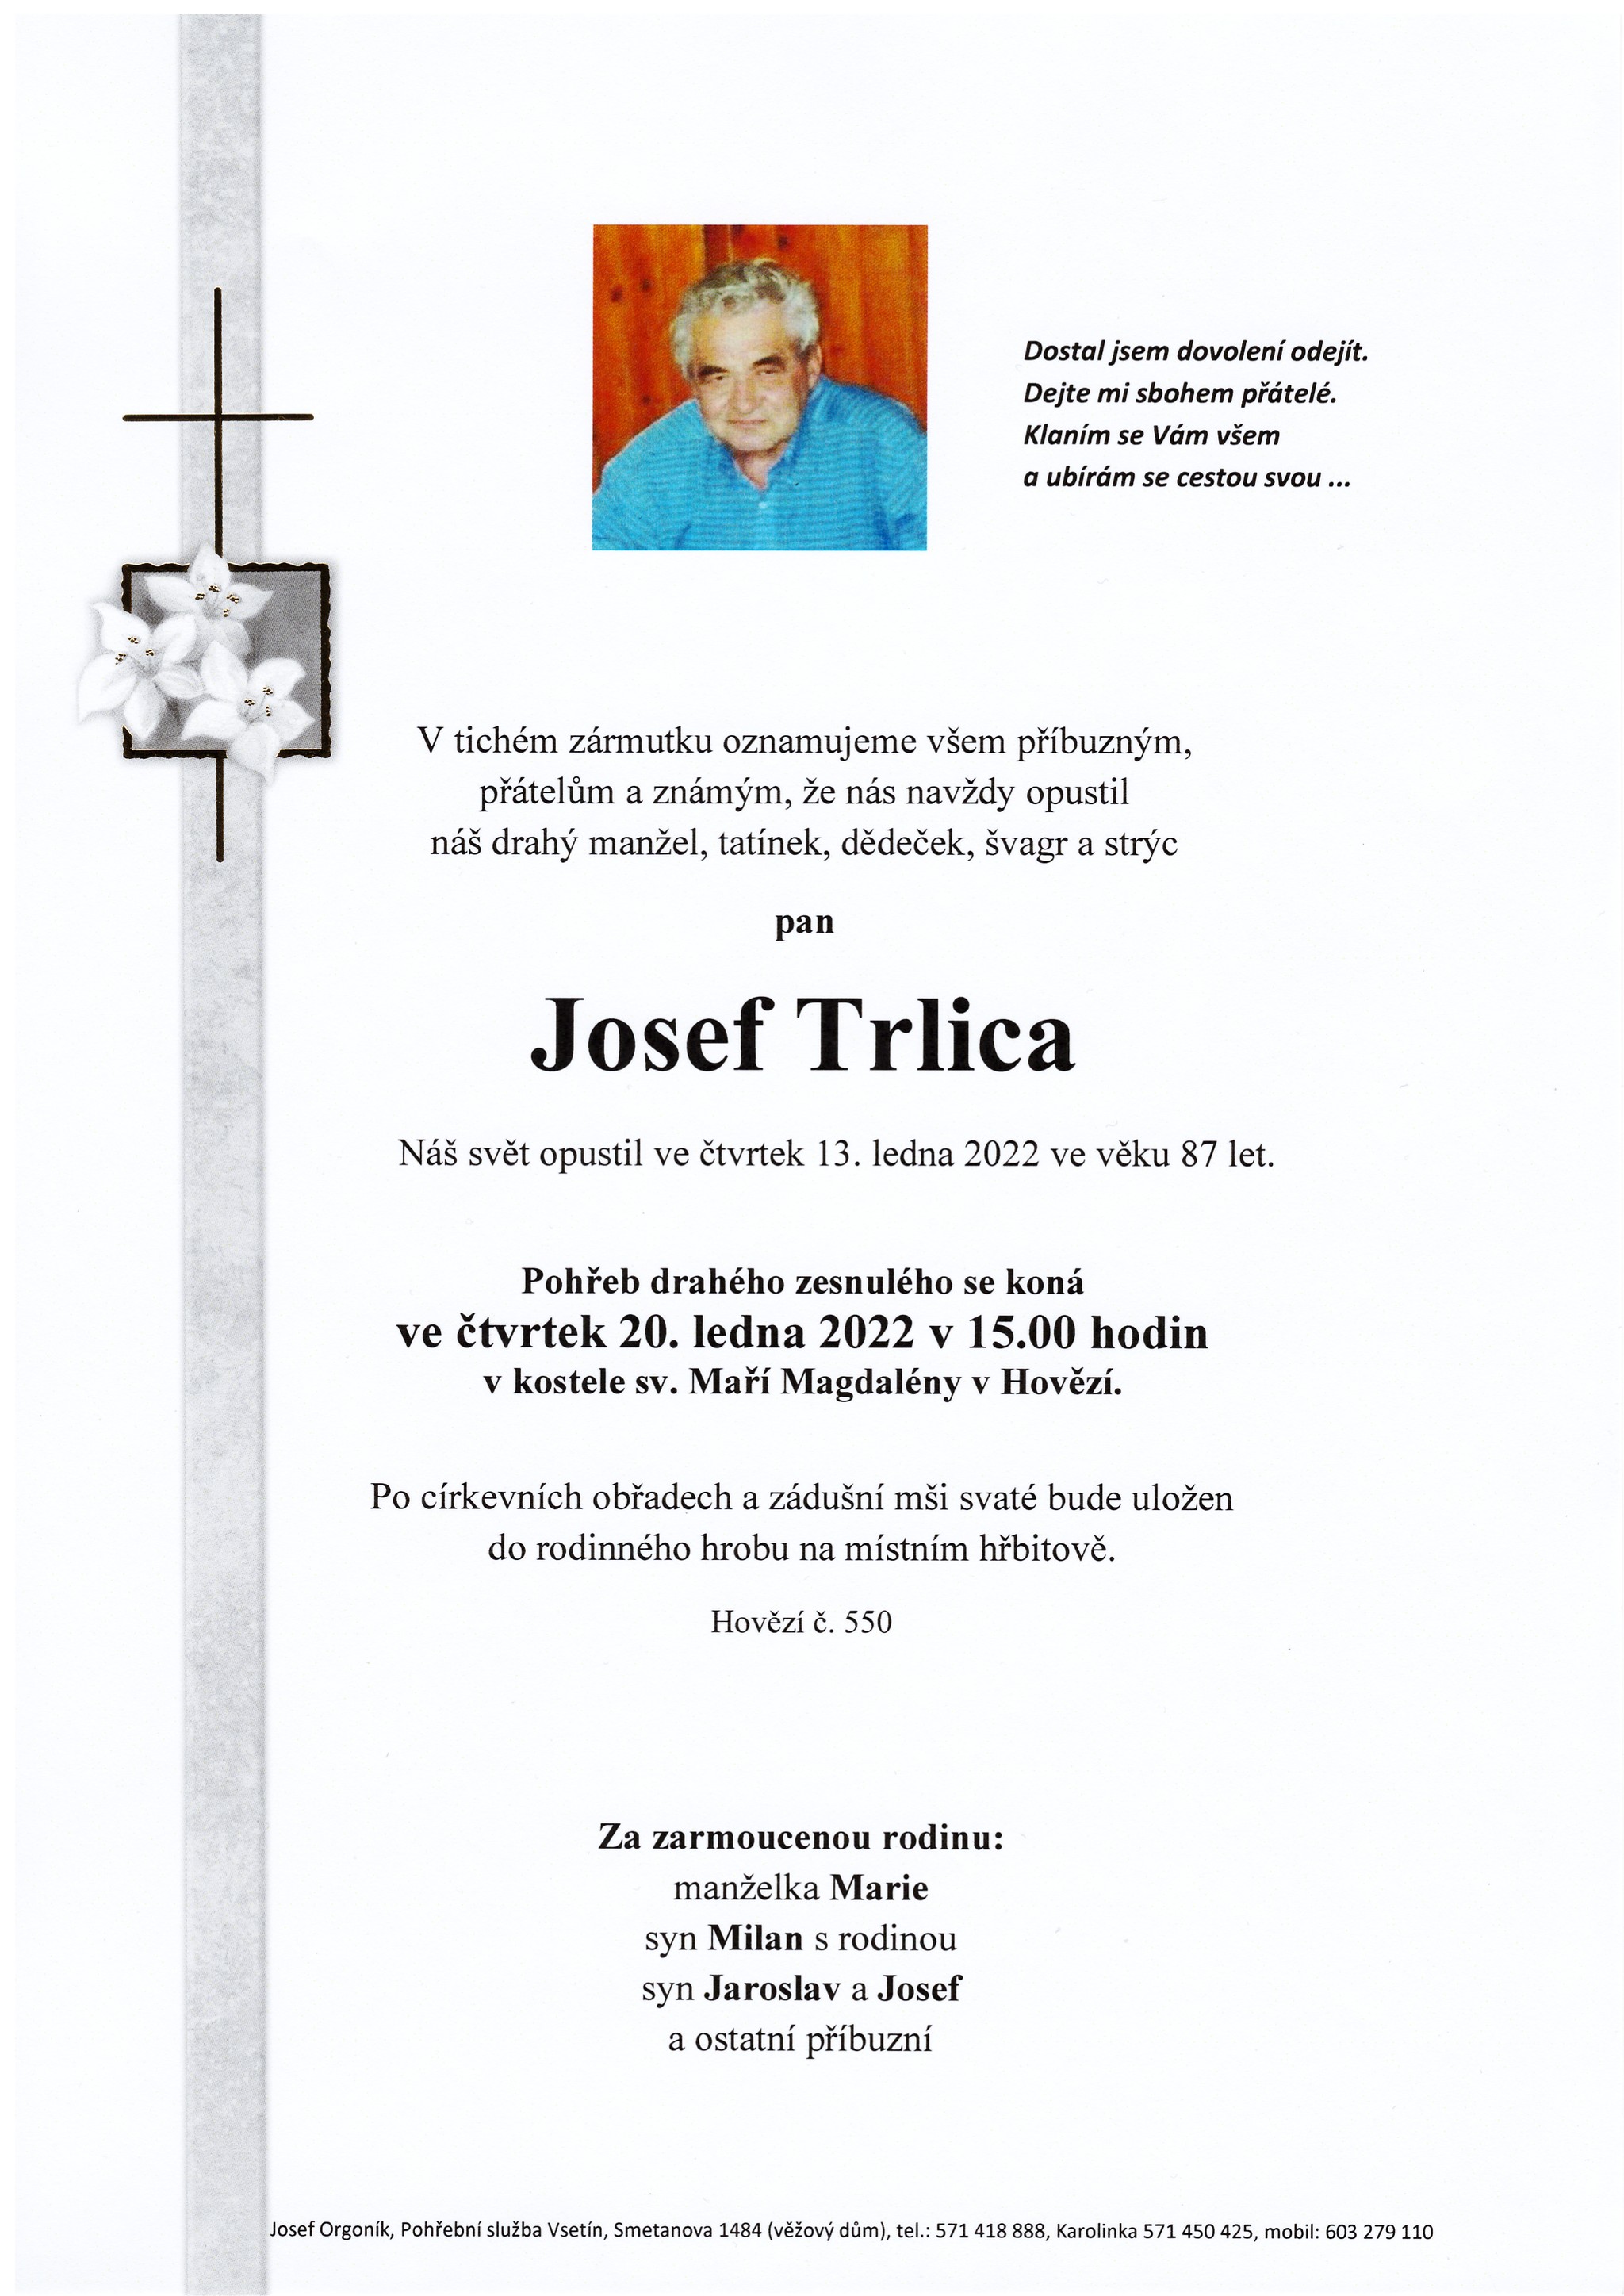 Josef Trlica